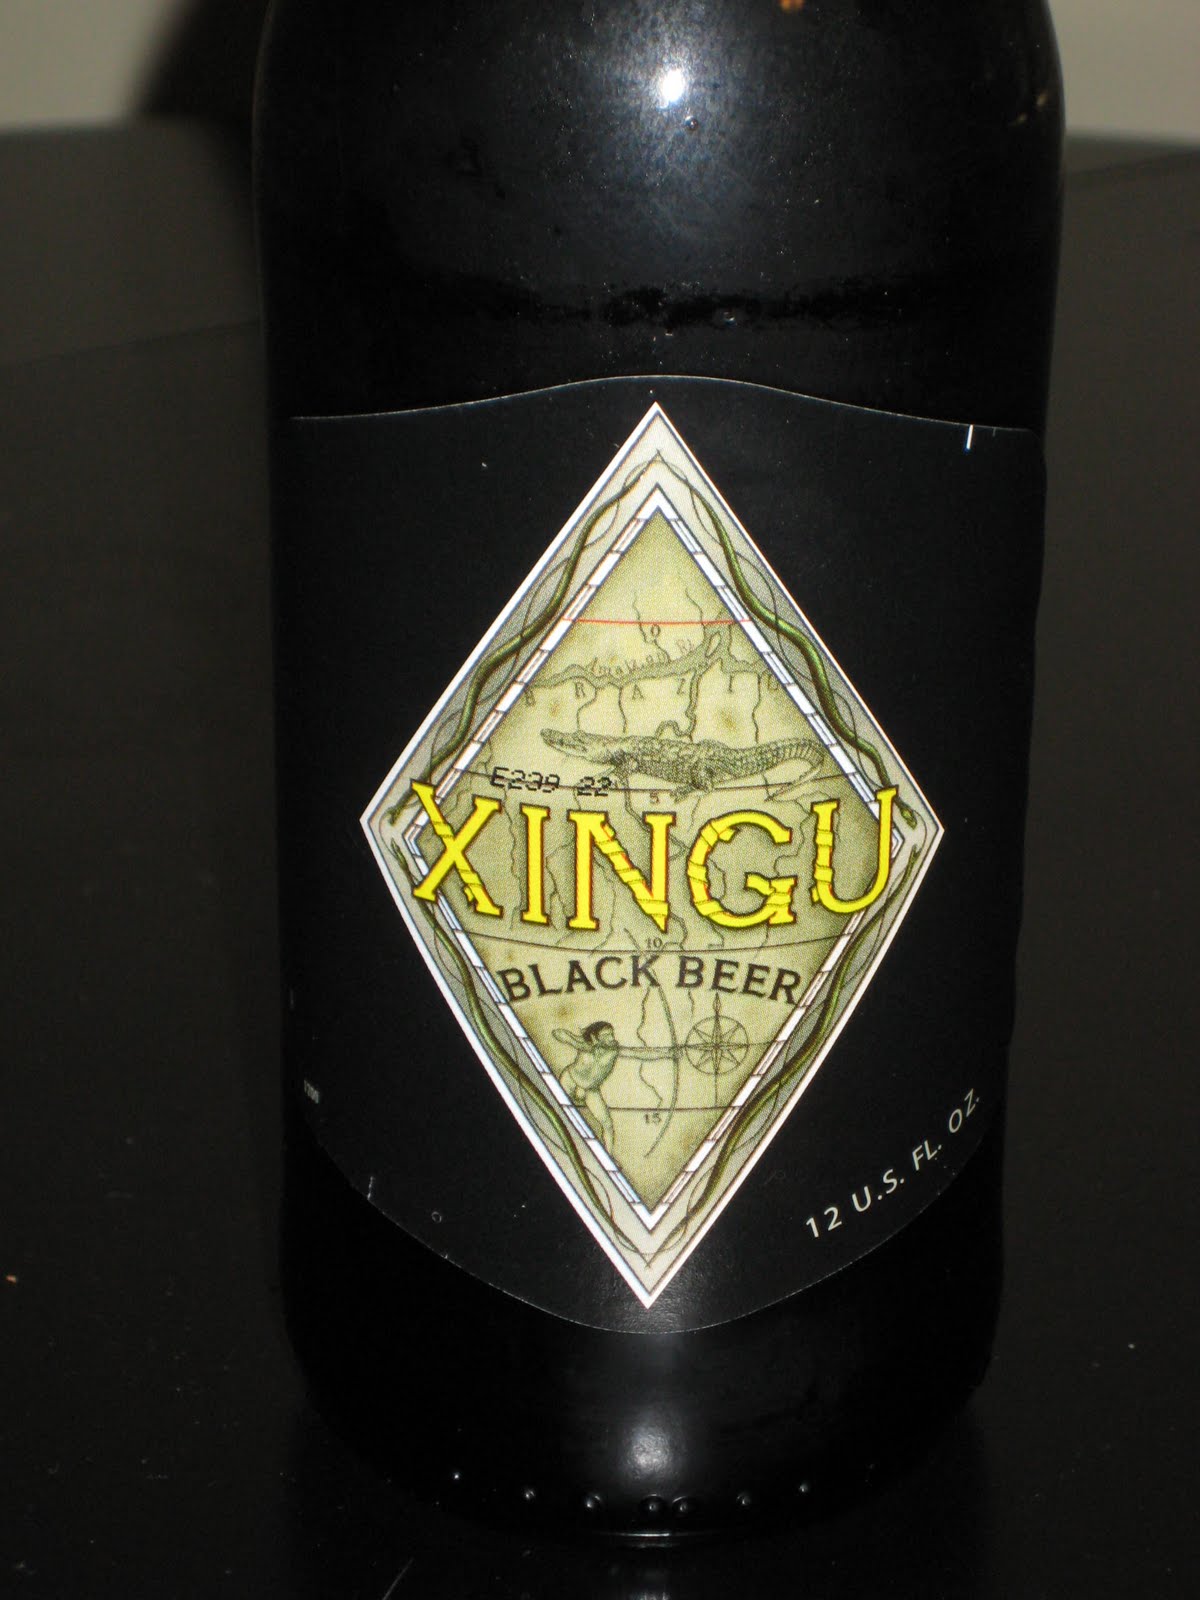 BEER MESSENGER: Xingu Black Beer - Back in Black